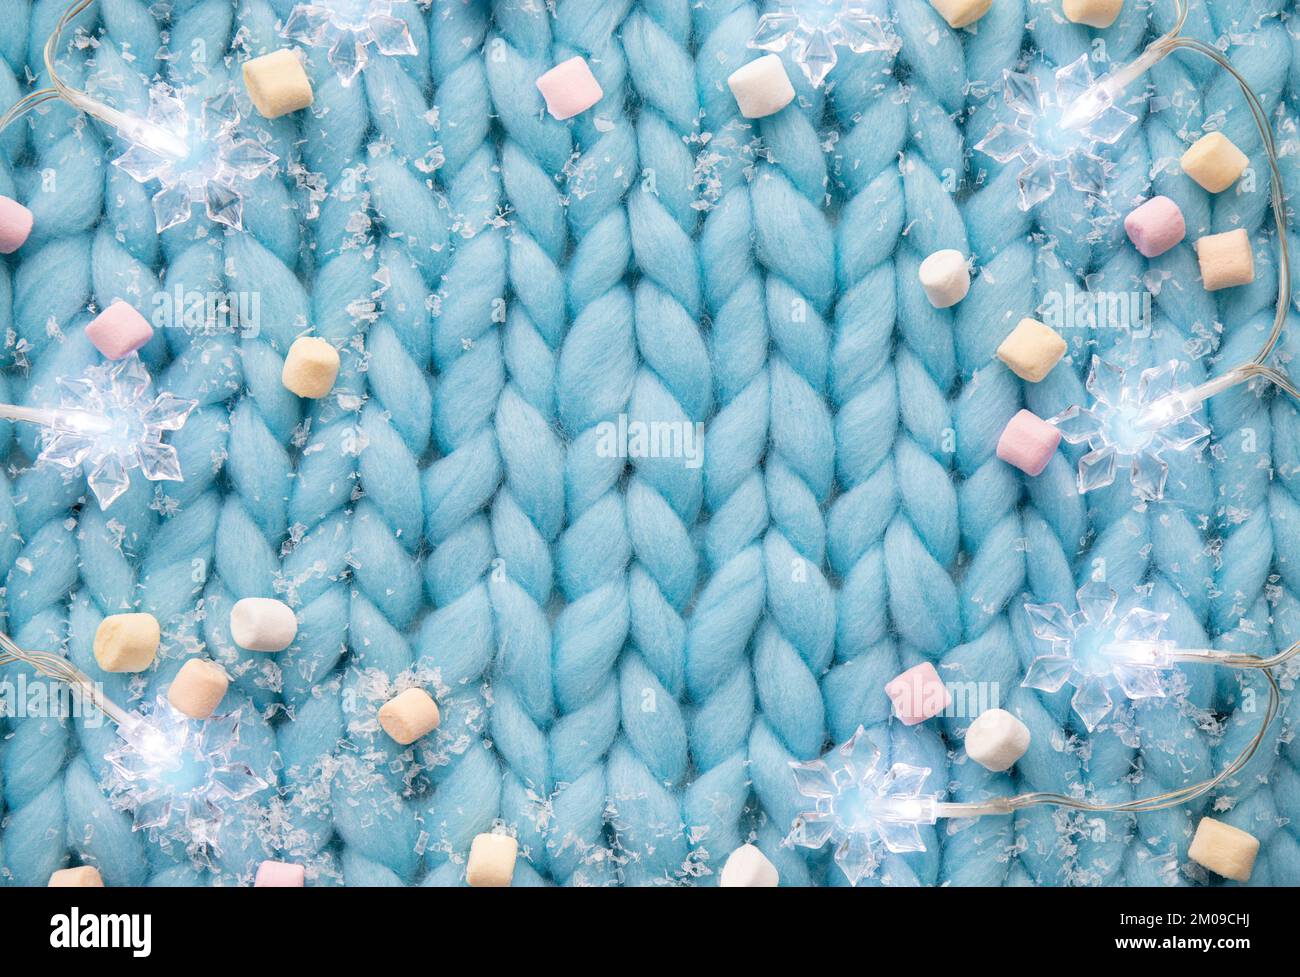 Vista superior de fondo de lana de diseño de punto azul claro con luces de cordón en forma de copo de nieve, nieve falsa y nubes pequeñas, invierno de Navidad. Foto de stock